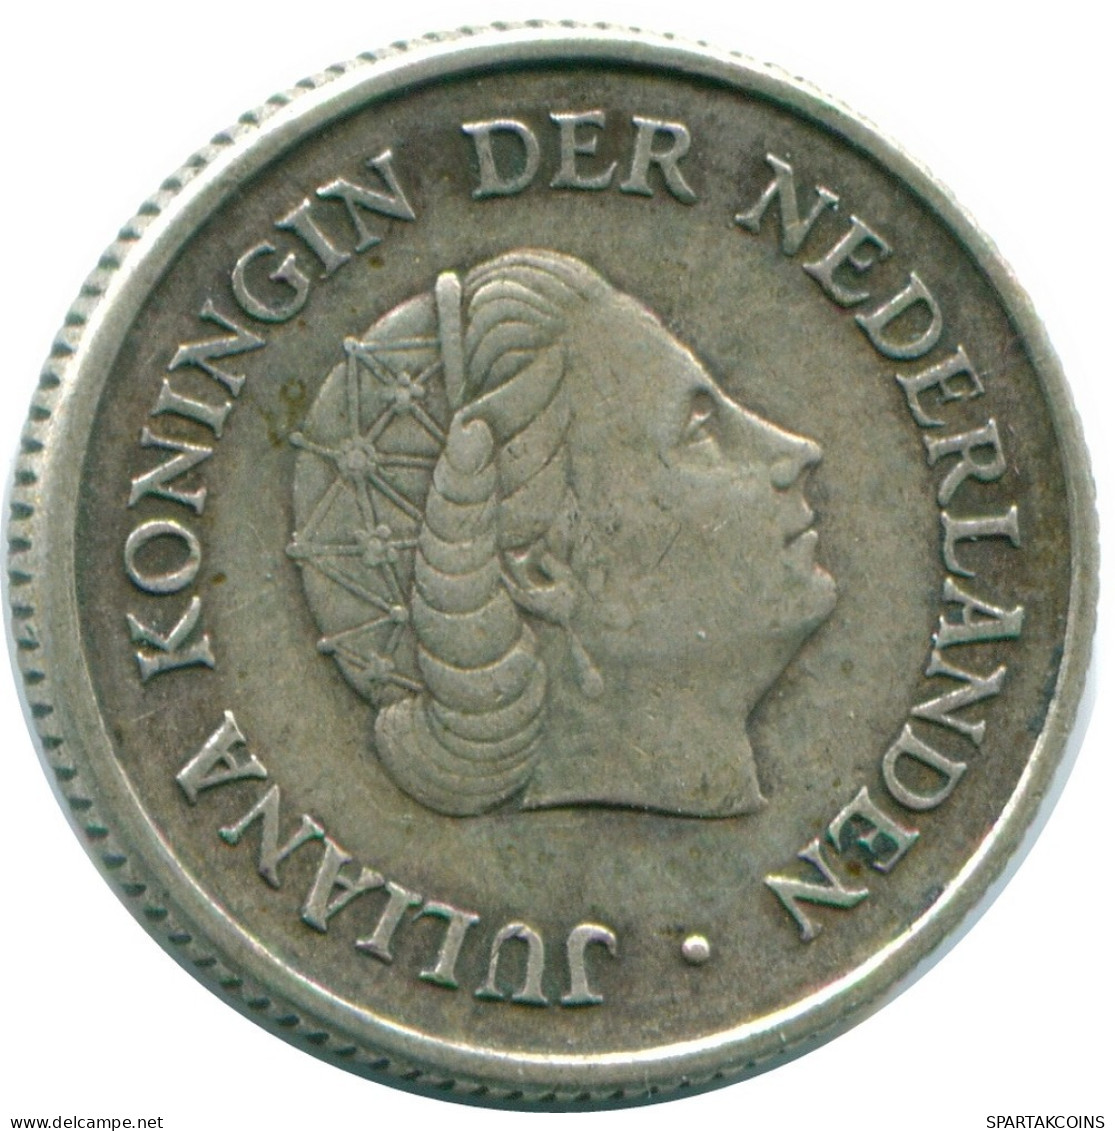 1/4 GULDEN 1967 NIEDERLÄNDISCHE ANTILLEN SILBER Koloniale Münze #NL11578.4.D.A - Niederländische Antillen